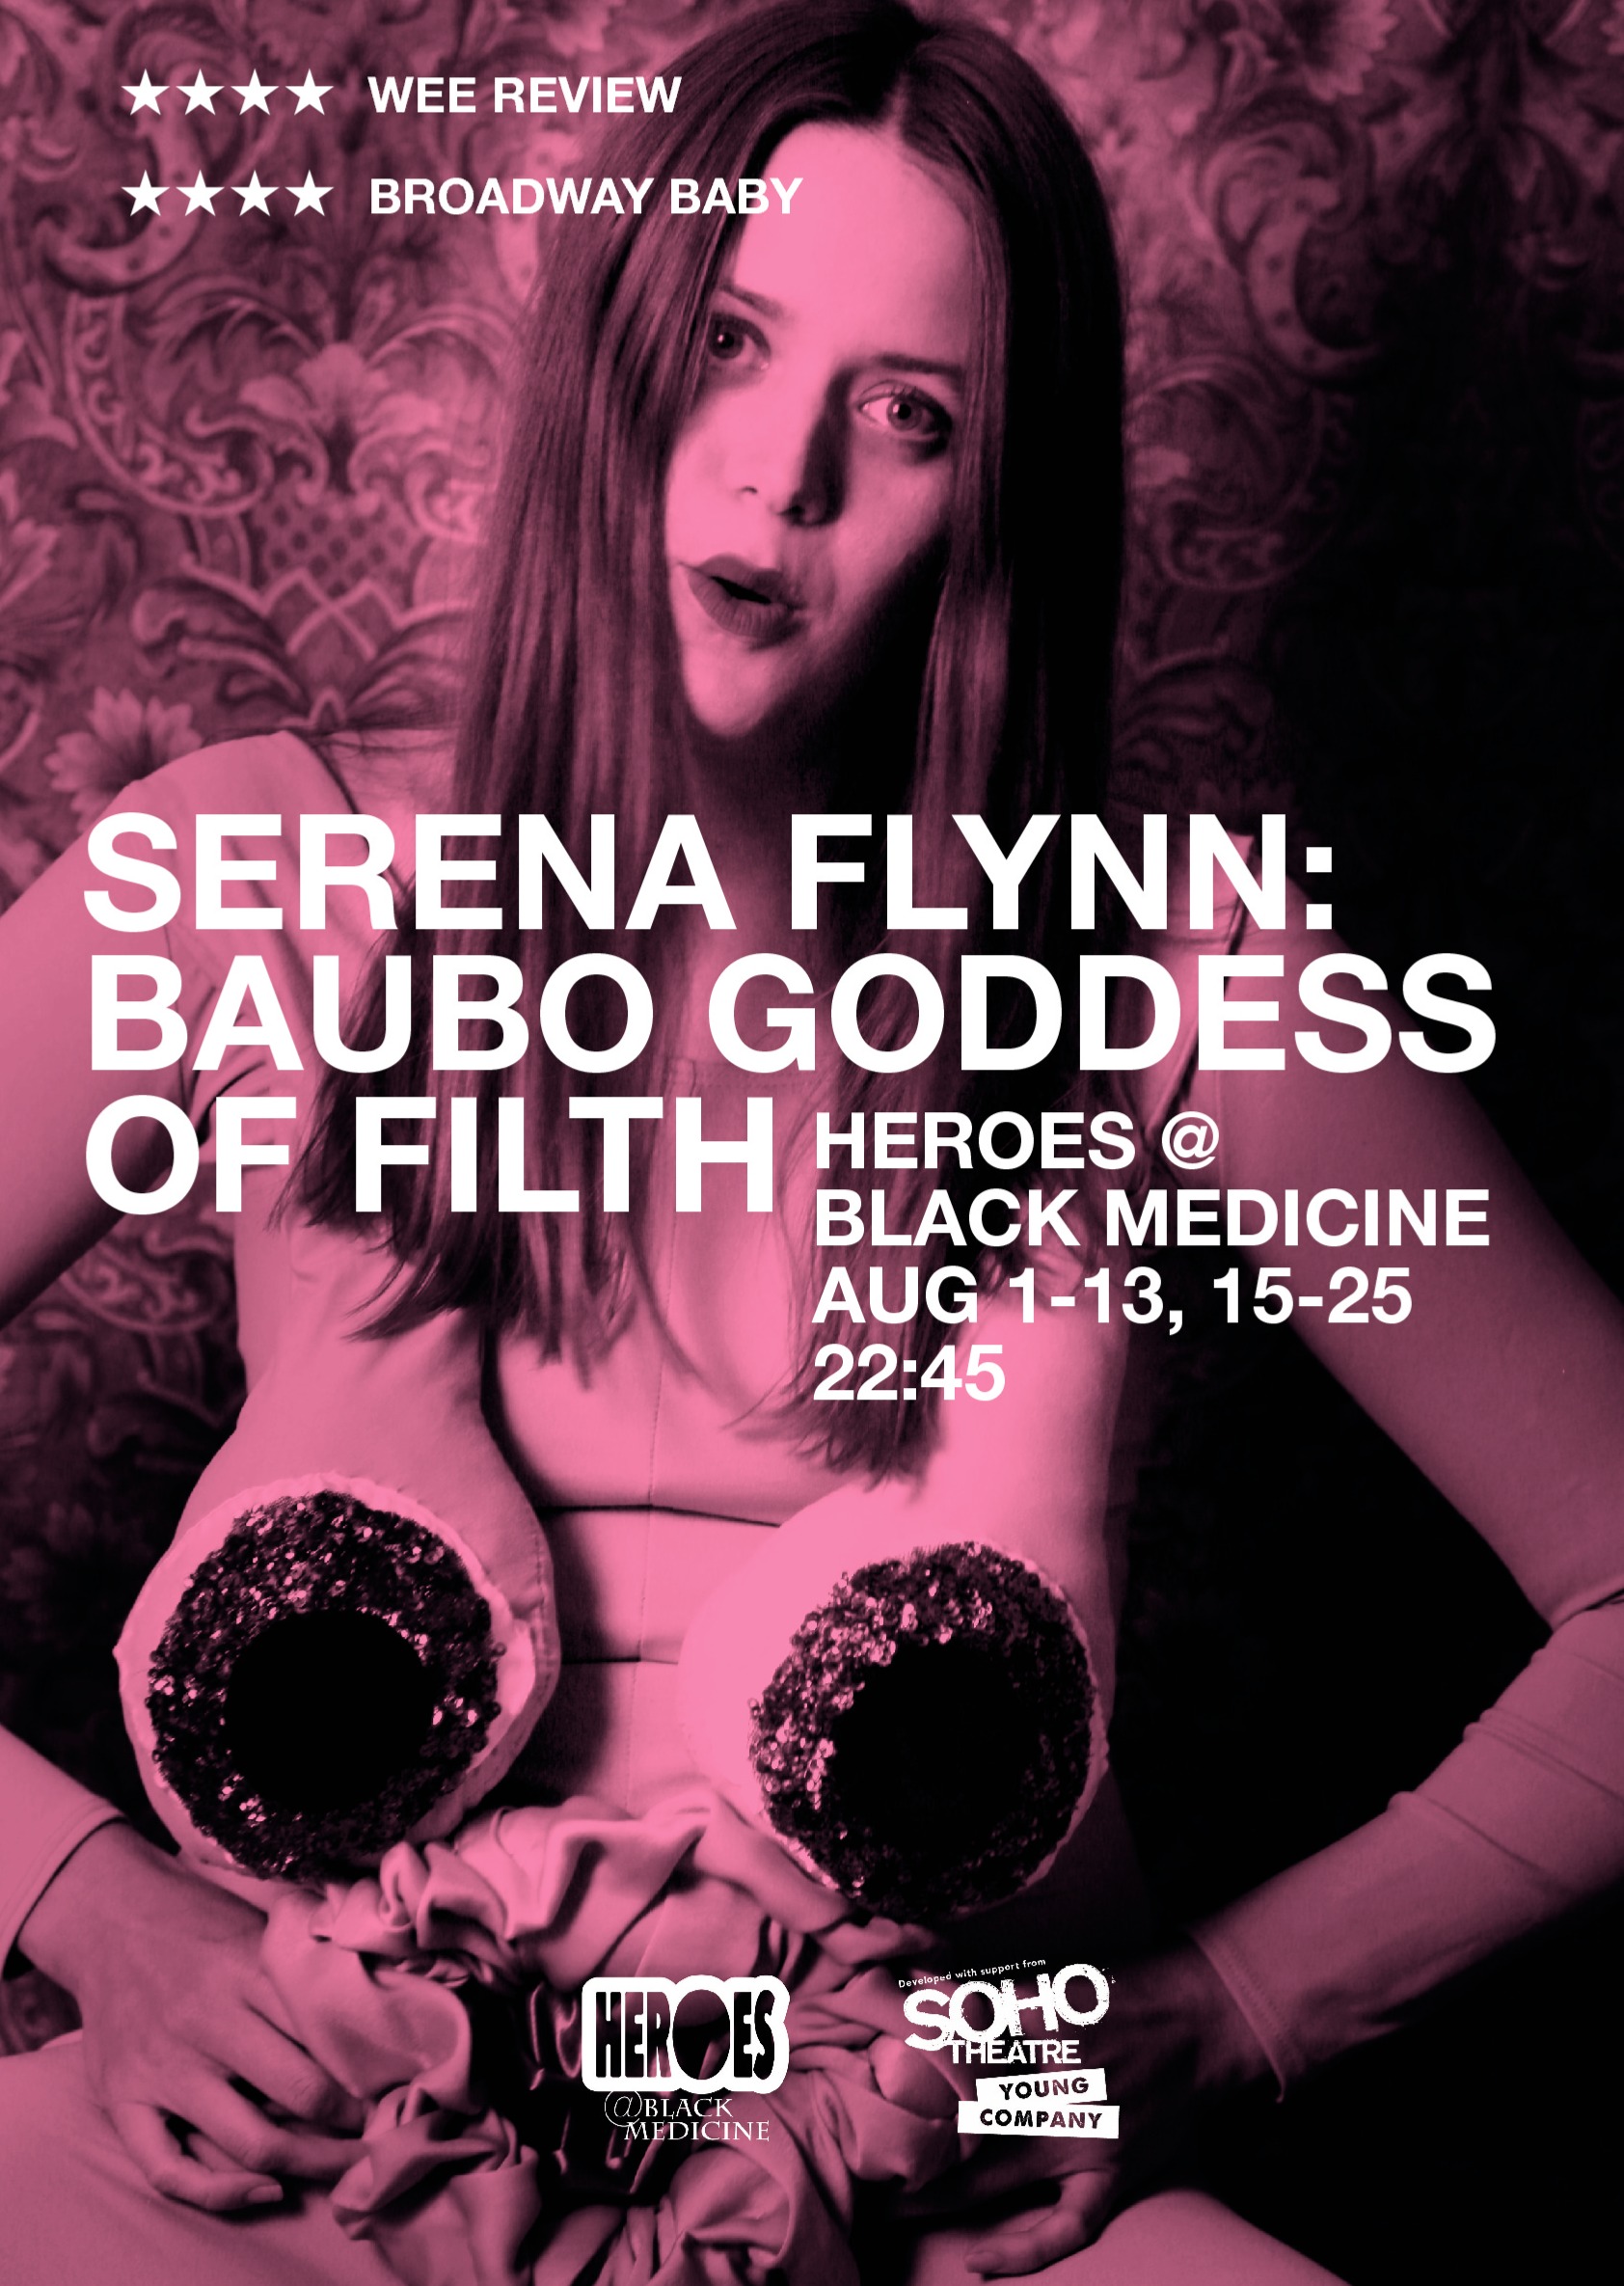 The poster for Serena Flynn: Baubo Goddess of Filth